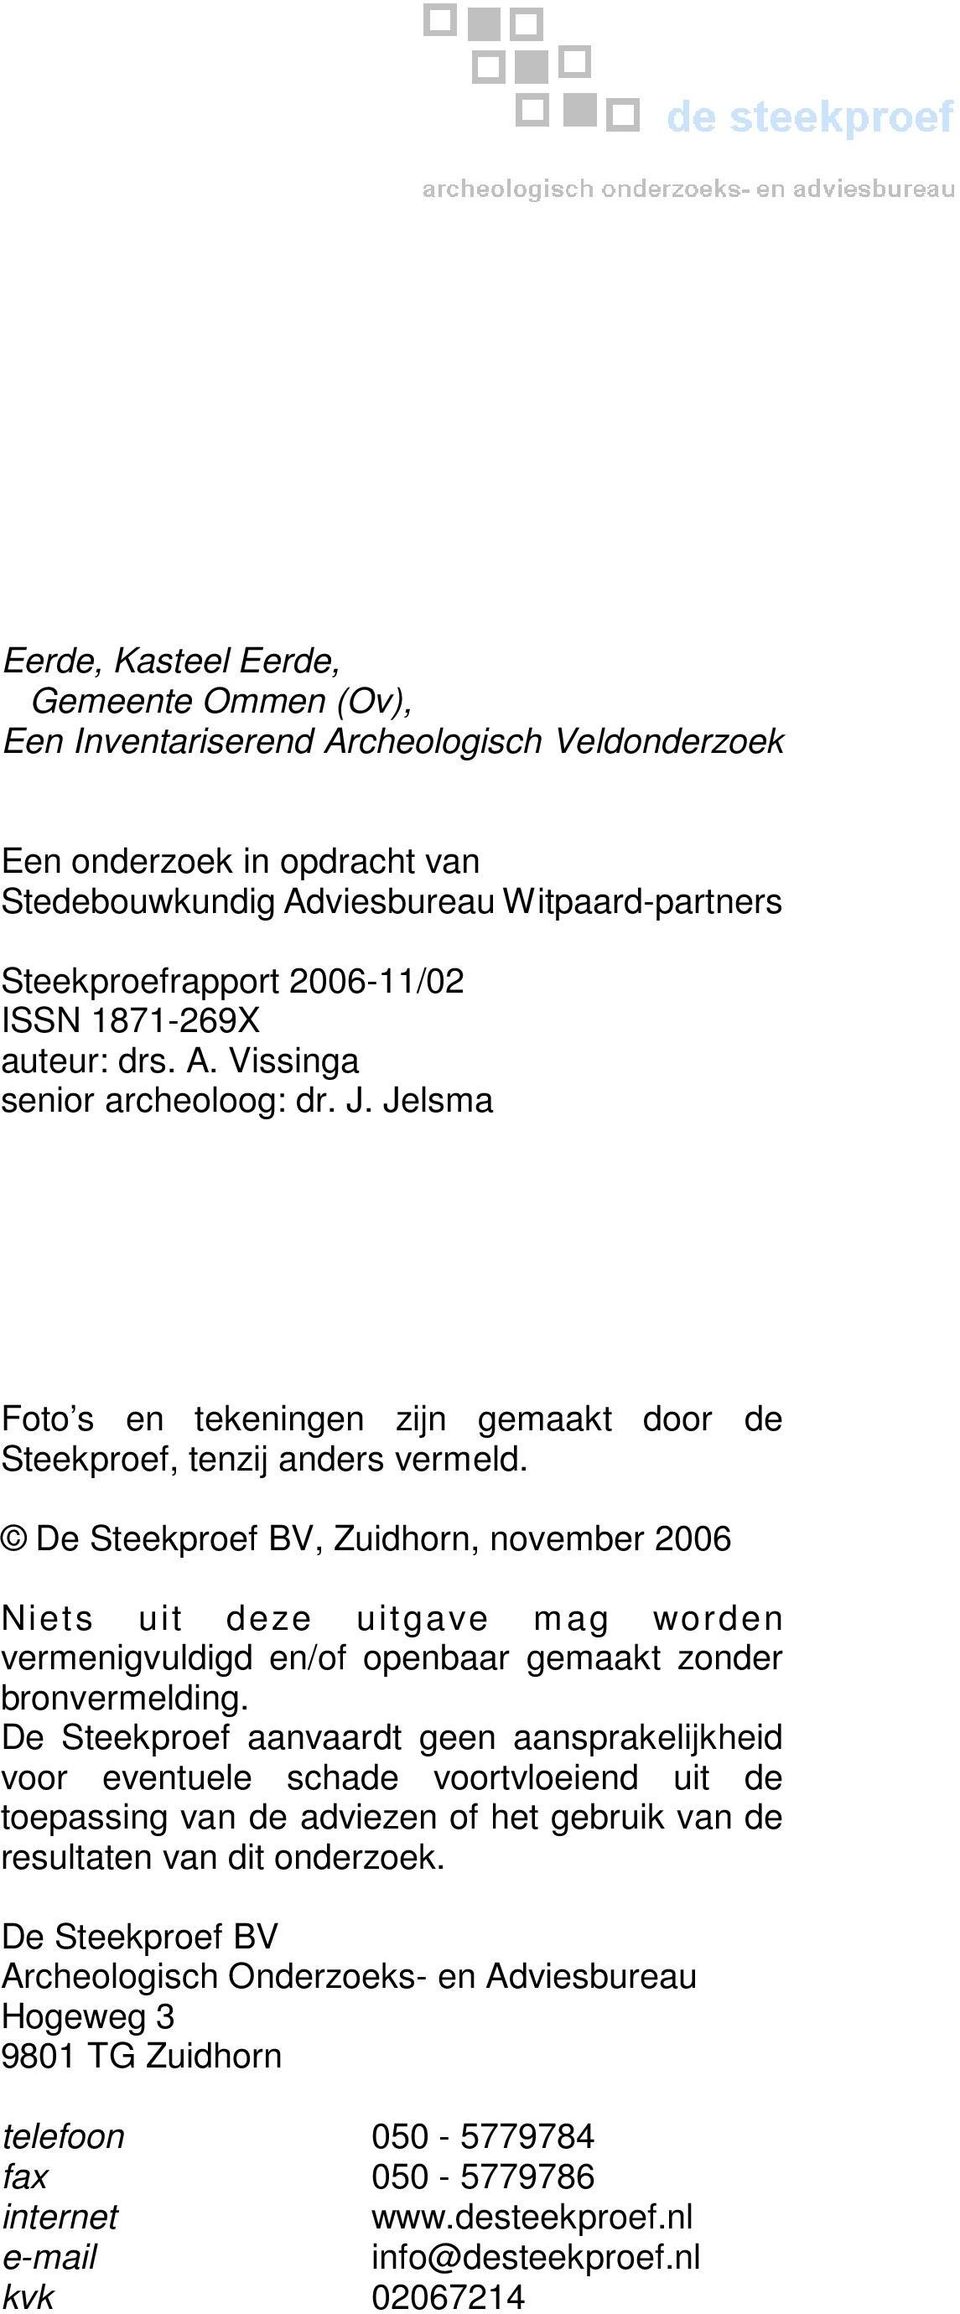 De Steekproef BV, Zuidhorn, november 2006 Niets uit deze uitgave m ag wor den vermenigvuldigd en/of openbaar gemaakt zonder bronvermelding.